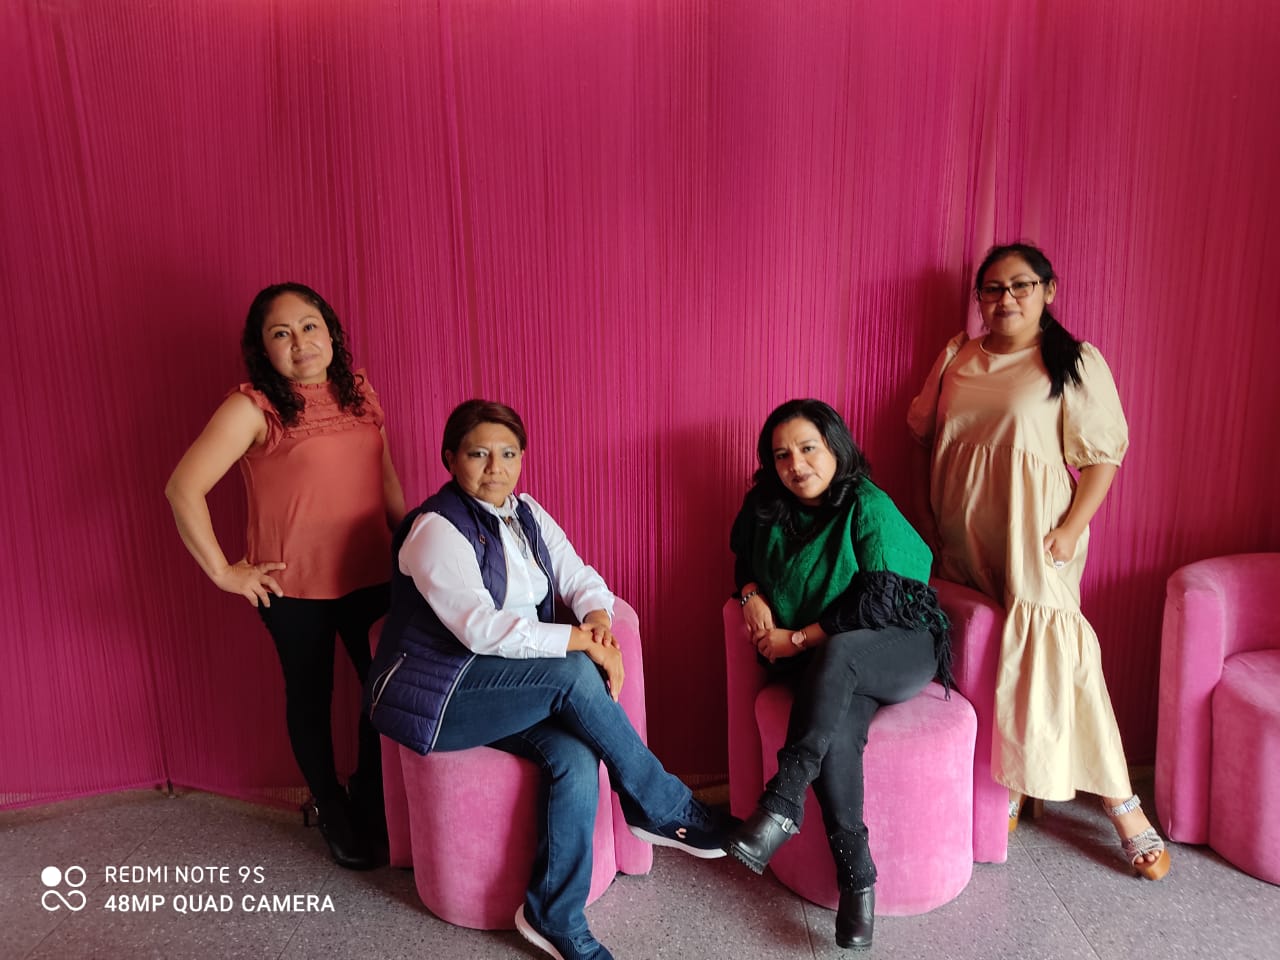 Trabajadoras sociales disfrutaron agradable convivencia con sus compañeras de labor | El Imparcial de Oaxaca